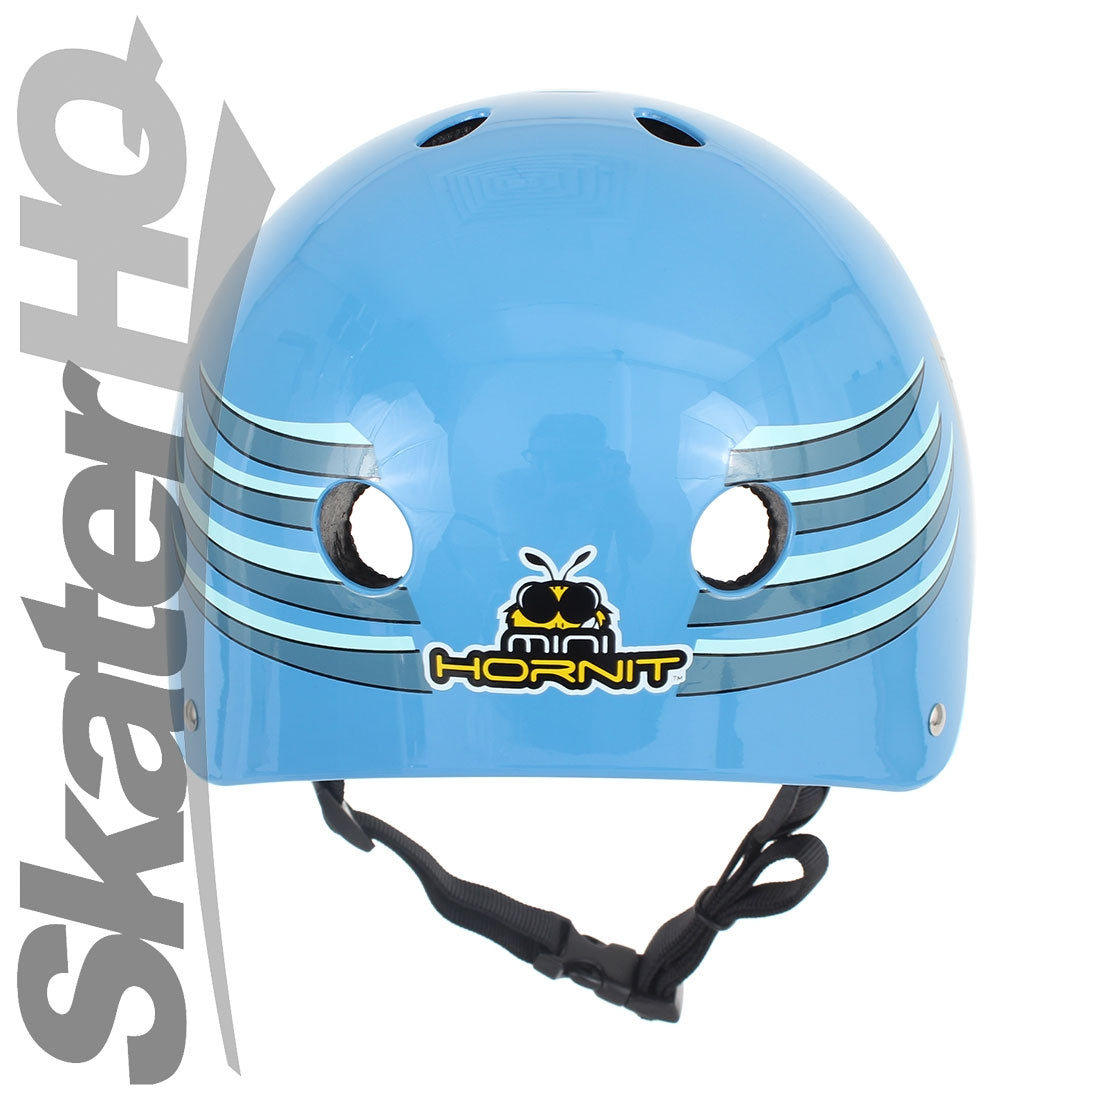 Hornit Lids Hammerhead Helmet - Small Helmets